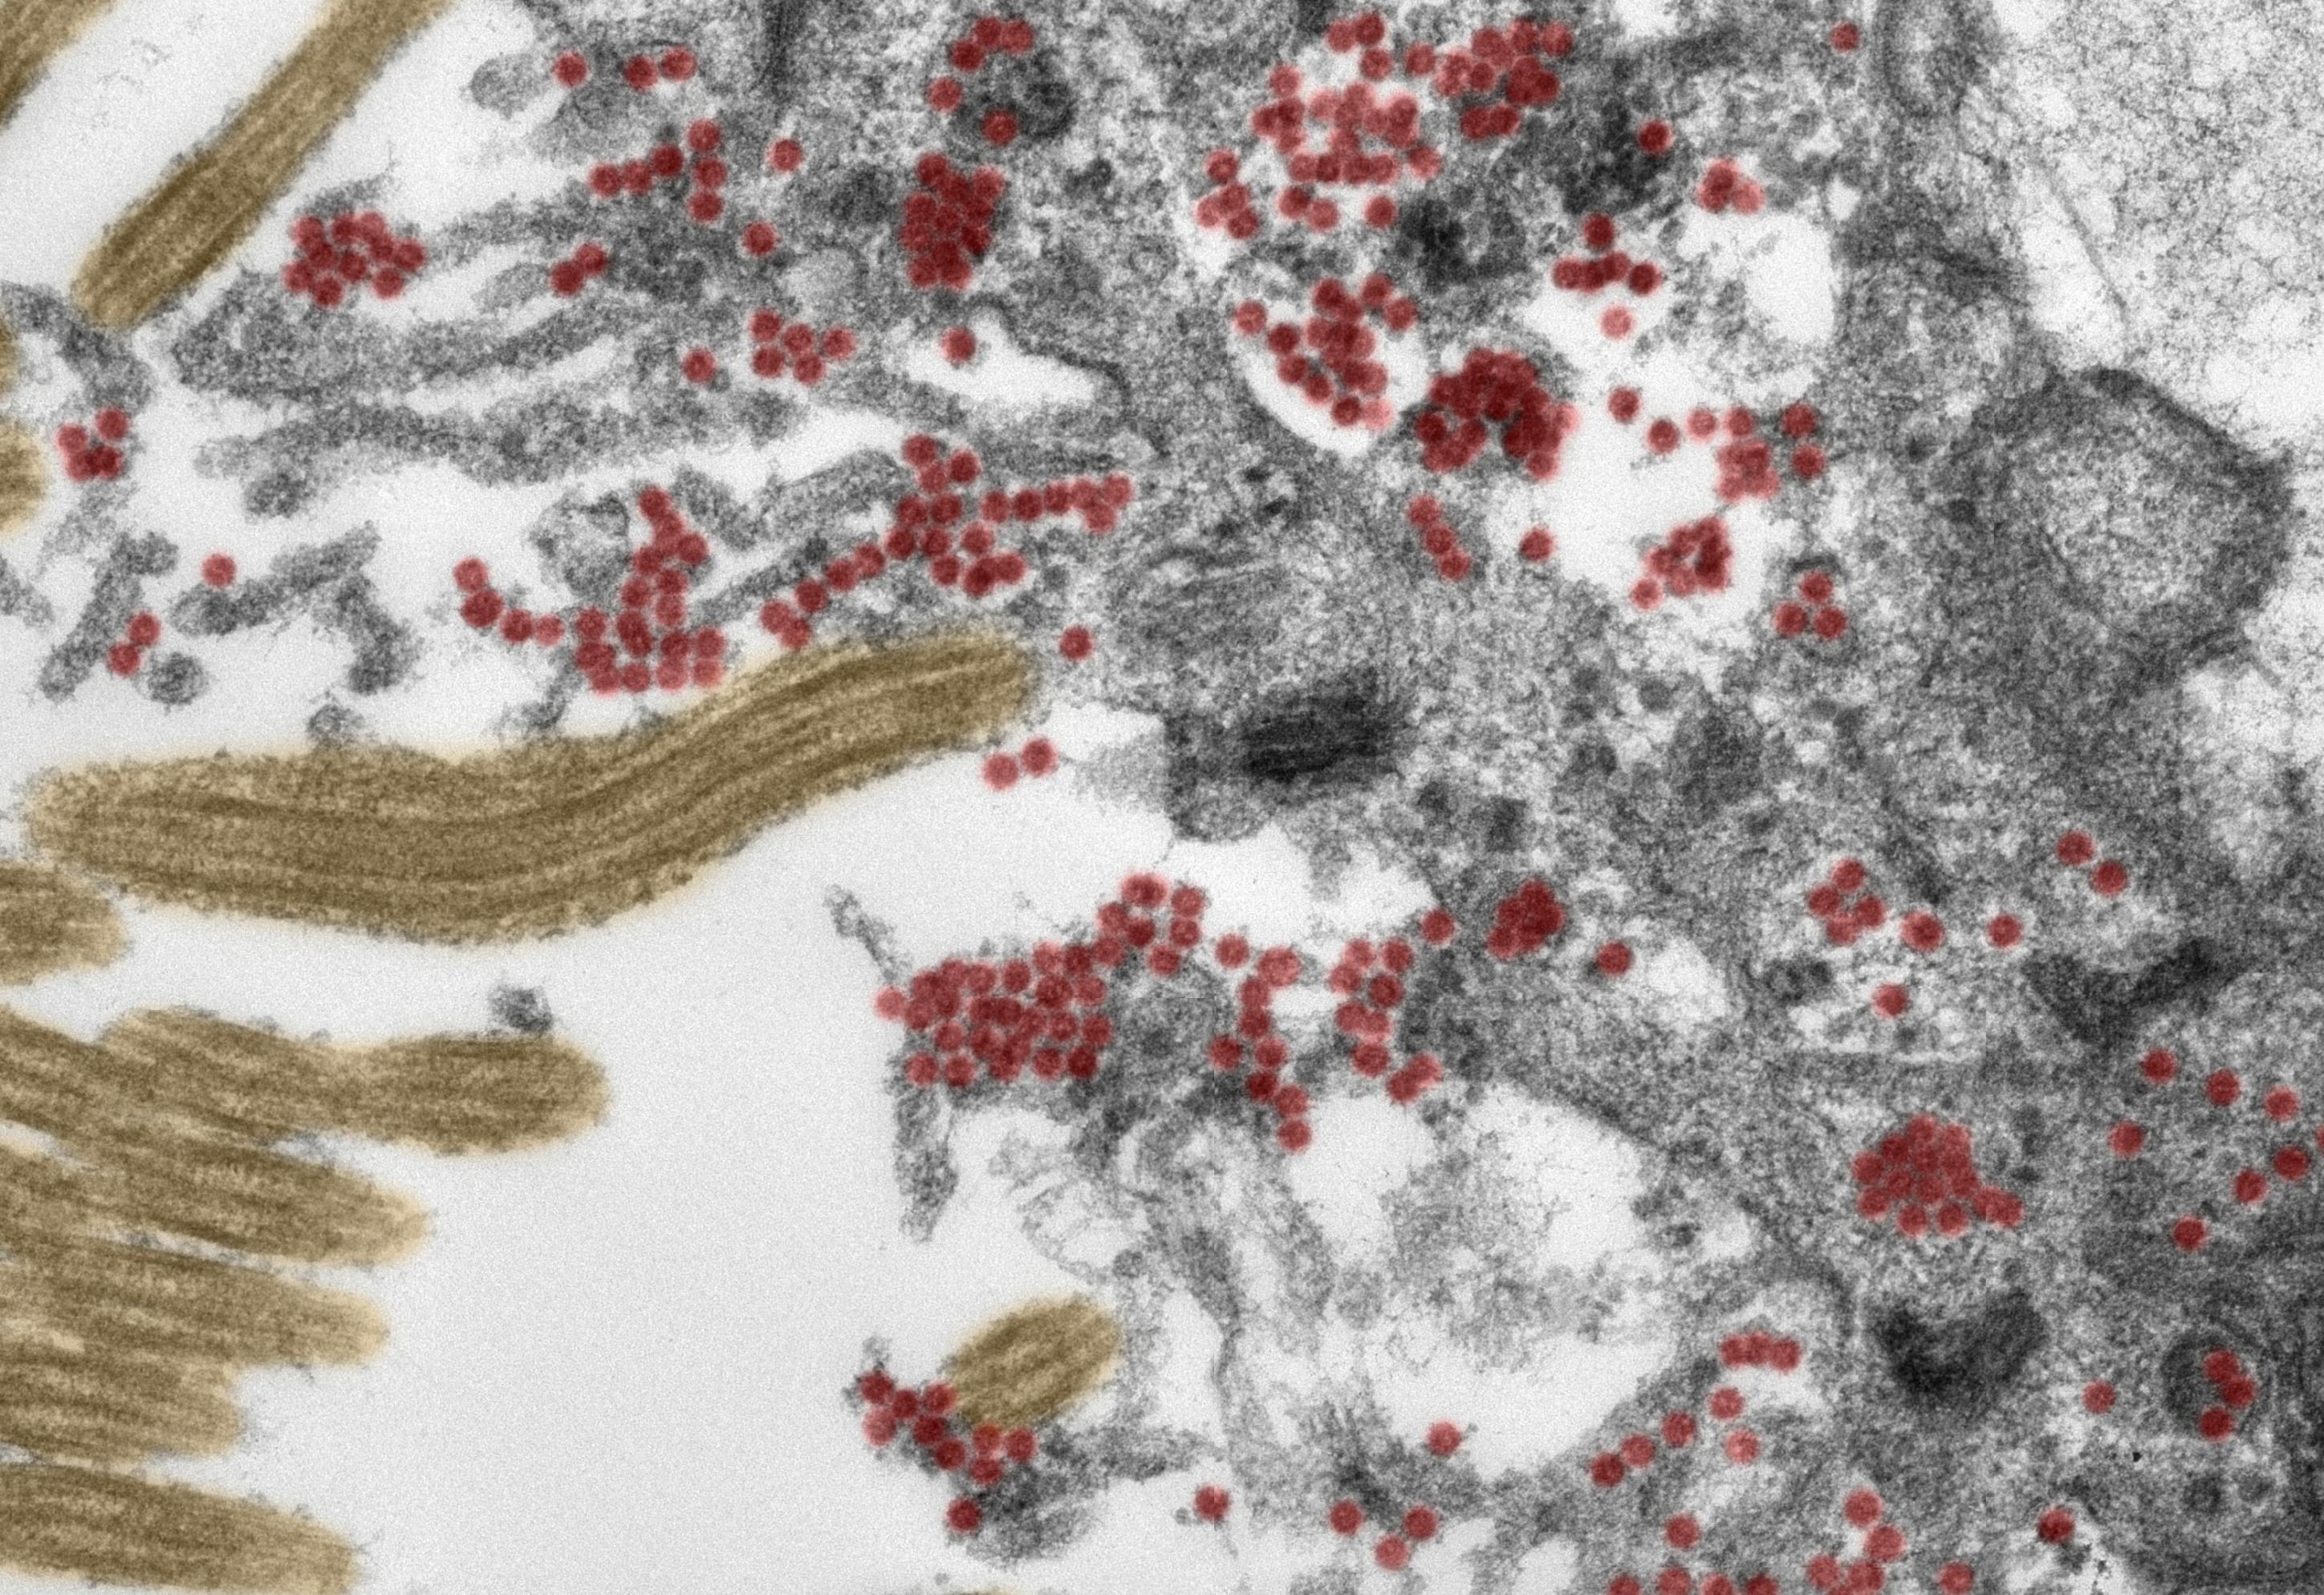 Die elektronenmikroskopische Aufnahme (Ultradünnschnitt, koloriert) zeigt den Ausschnitt einer Zelle in der Riechschleimhaut. Sowohl innerhalb der Zelle als auch auf den Zellfortsätzen findet sich eine große Zahl intakter SARS-CoV-2-Partikel (rot). Gelb: Flimmerhärchen.